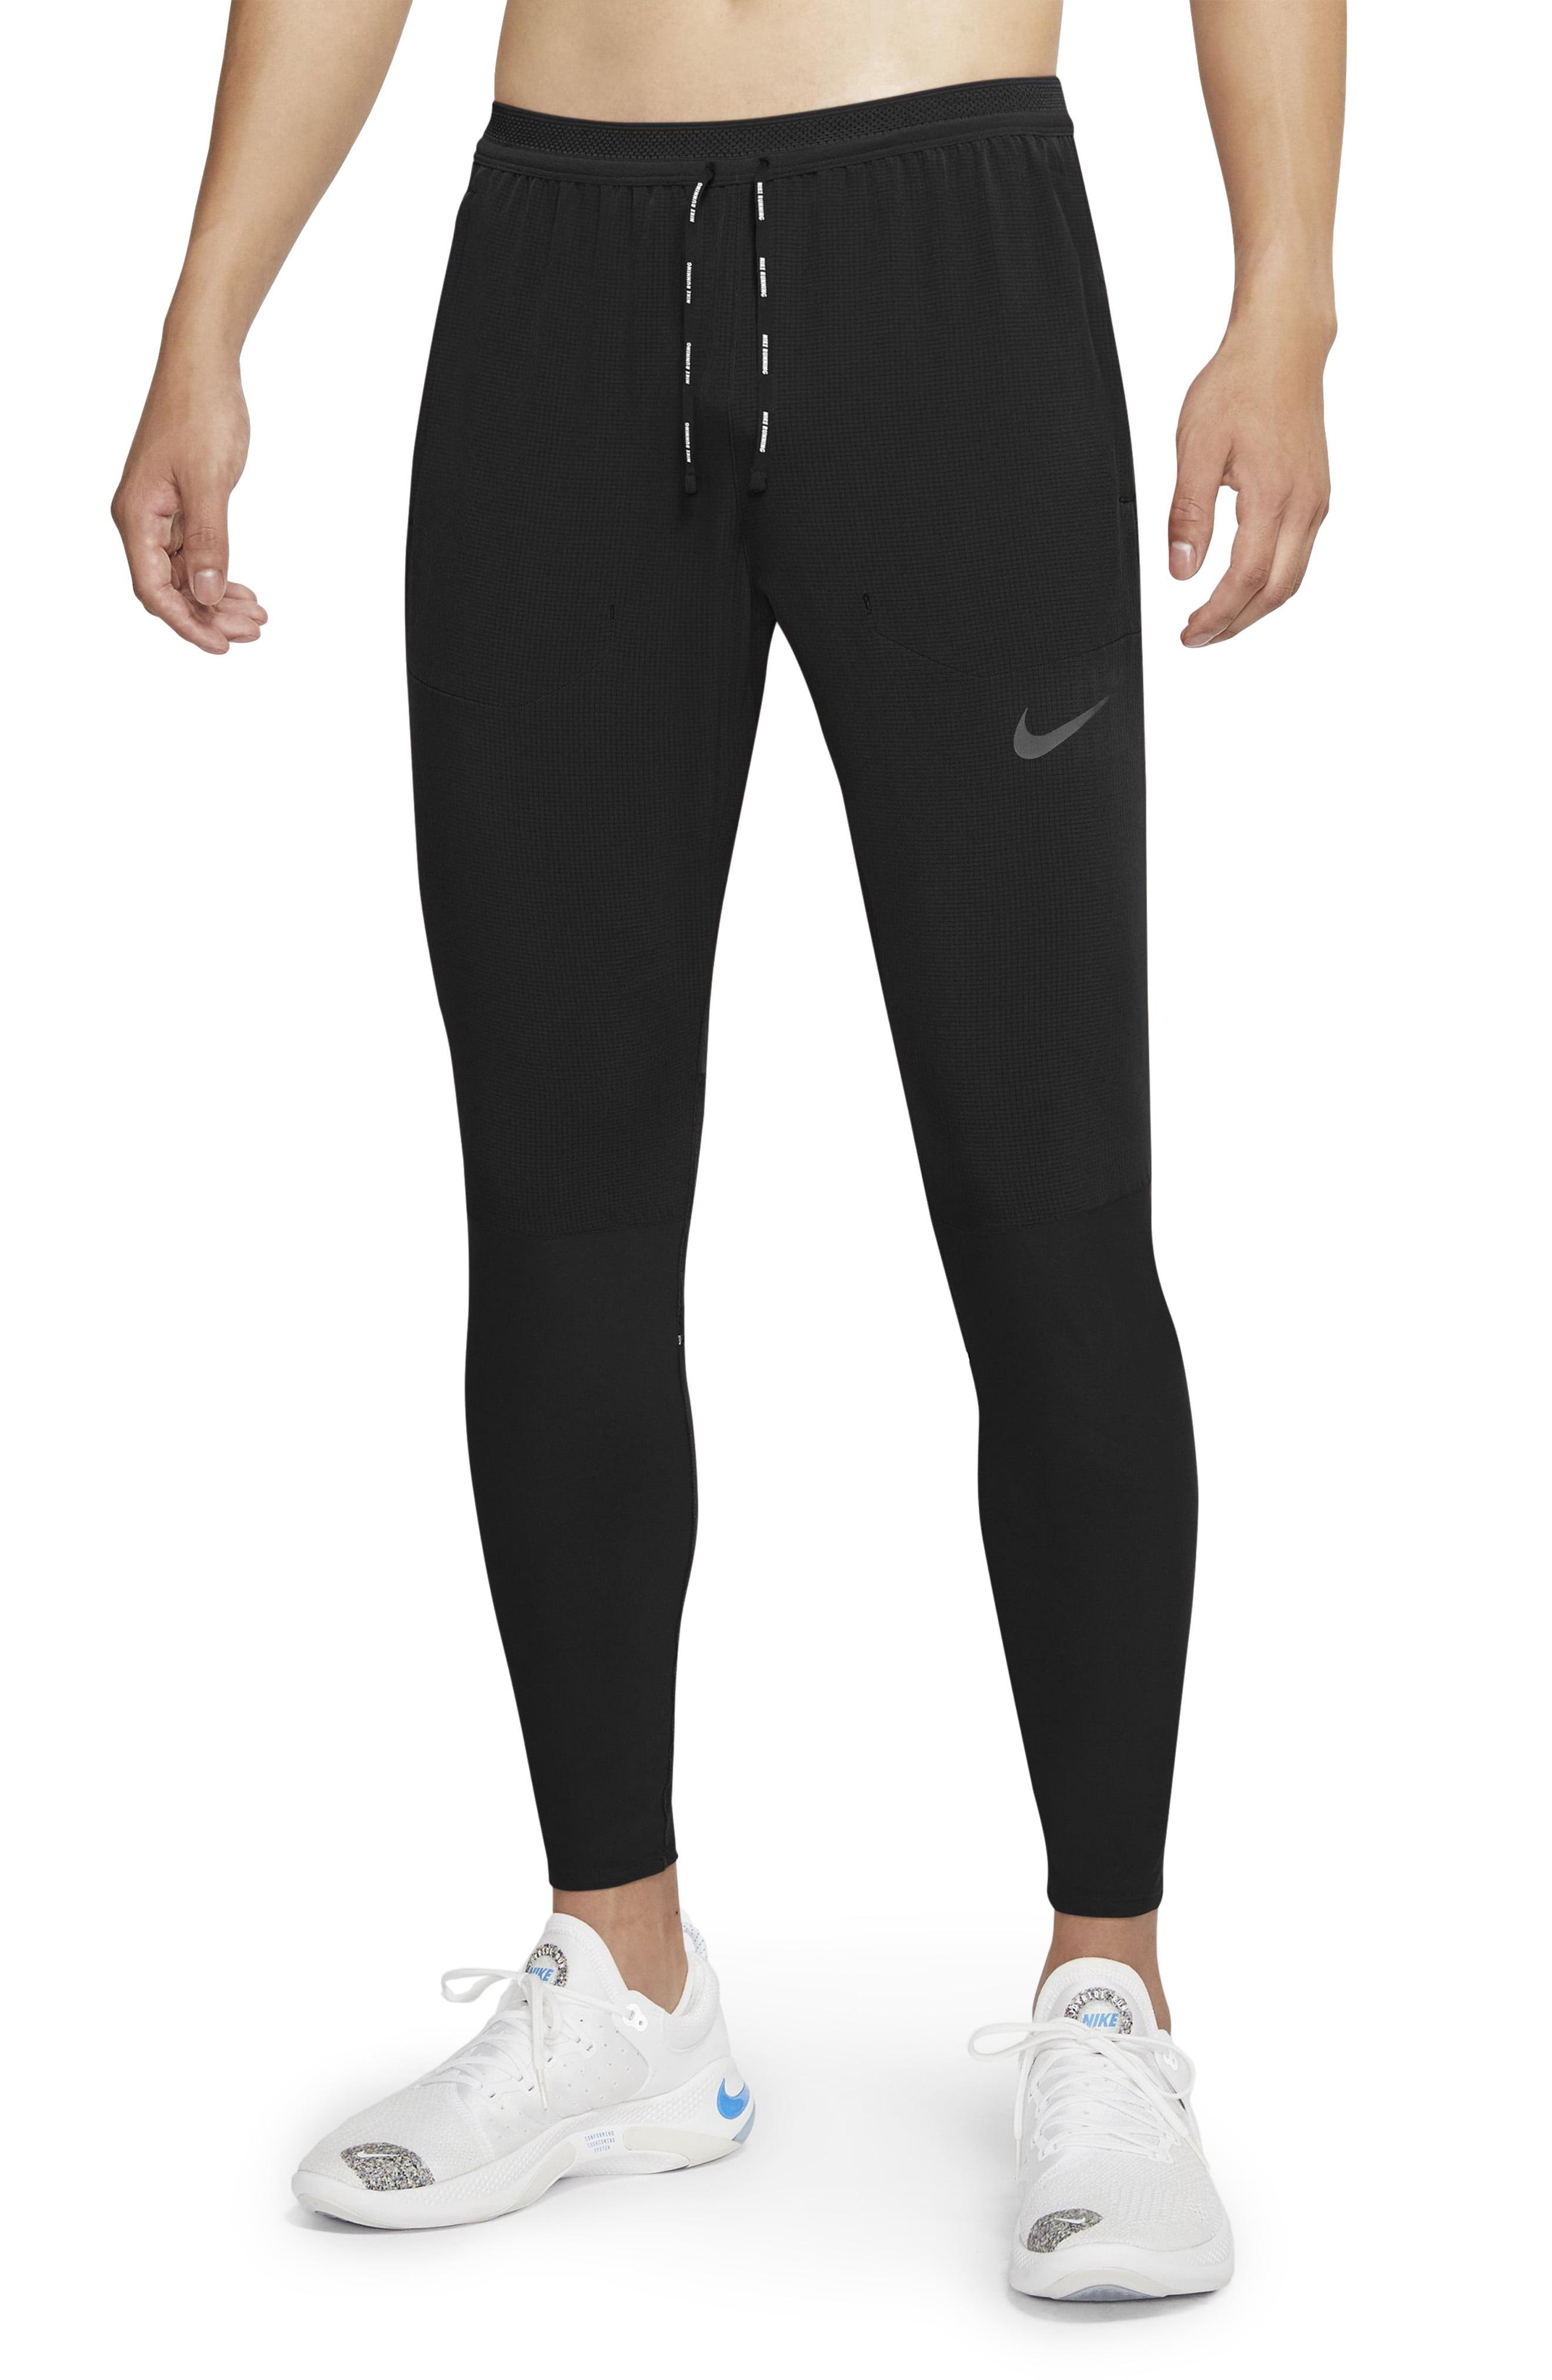 Nike Swift Running Pants in Black/Black (Black) for Men - Lyst